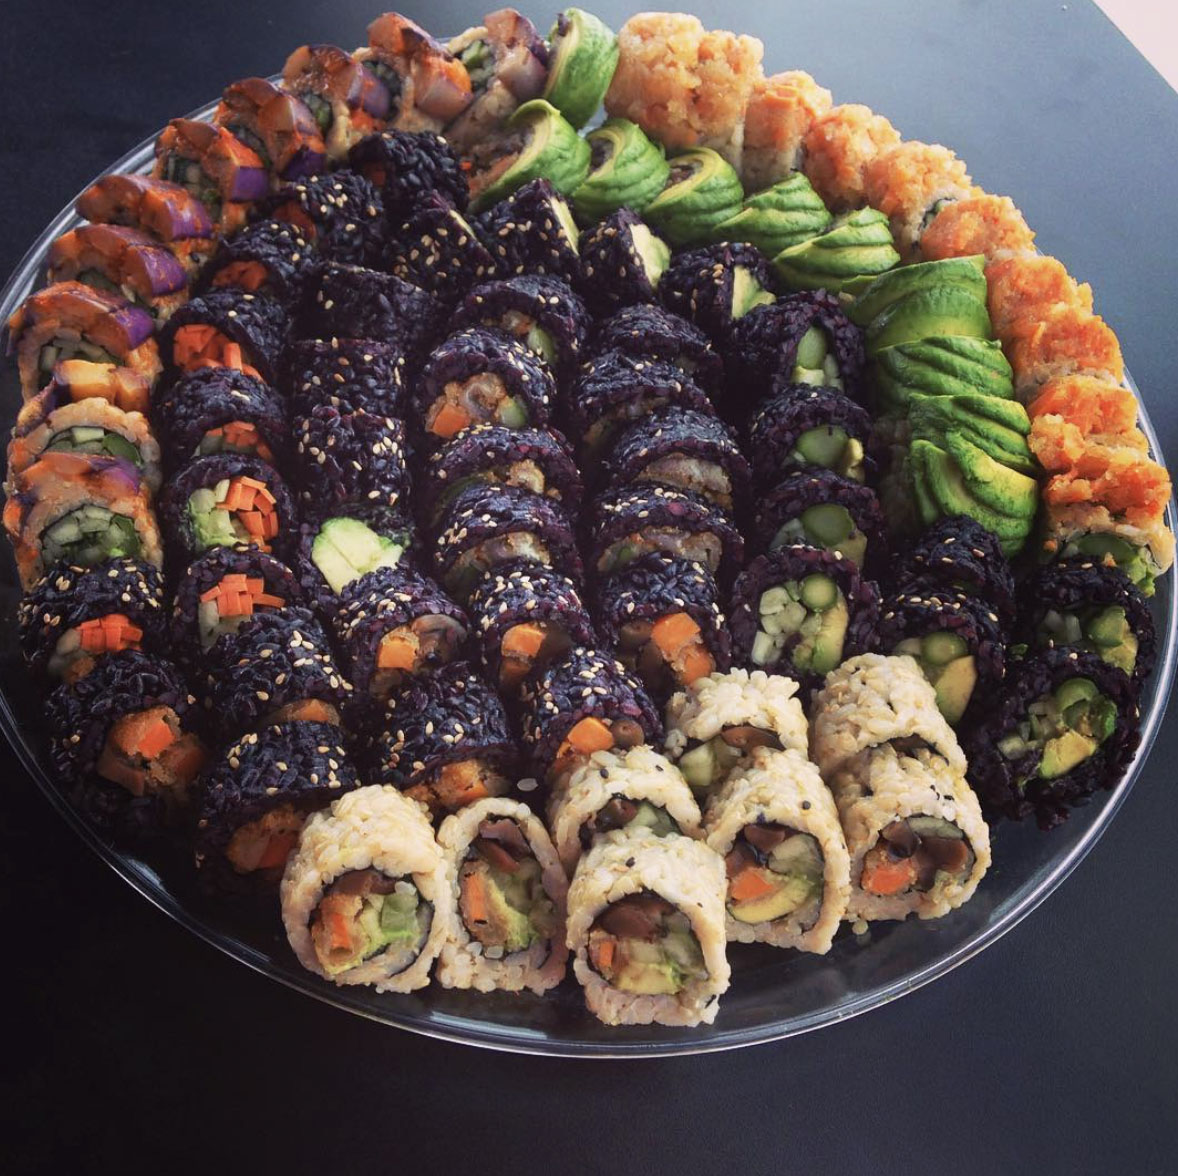 Plate full of vegan sushi rolls from Hamachi